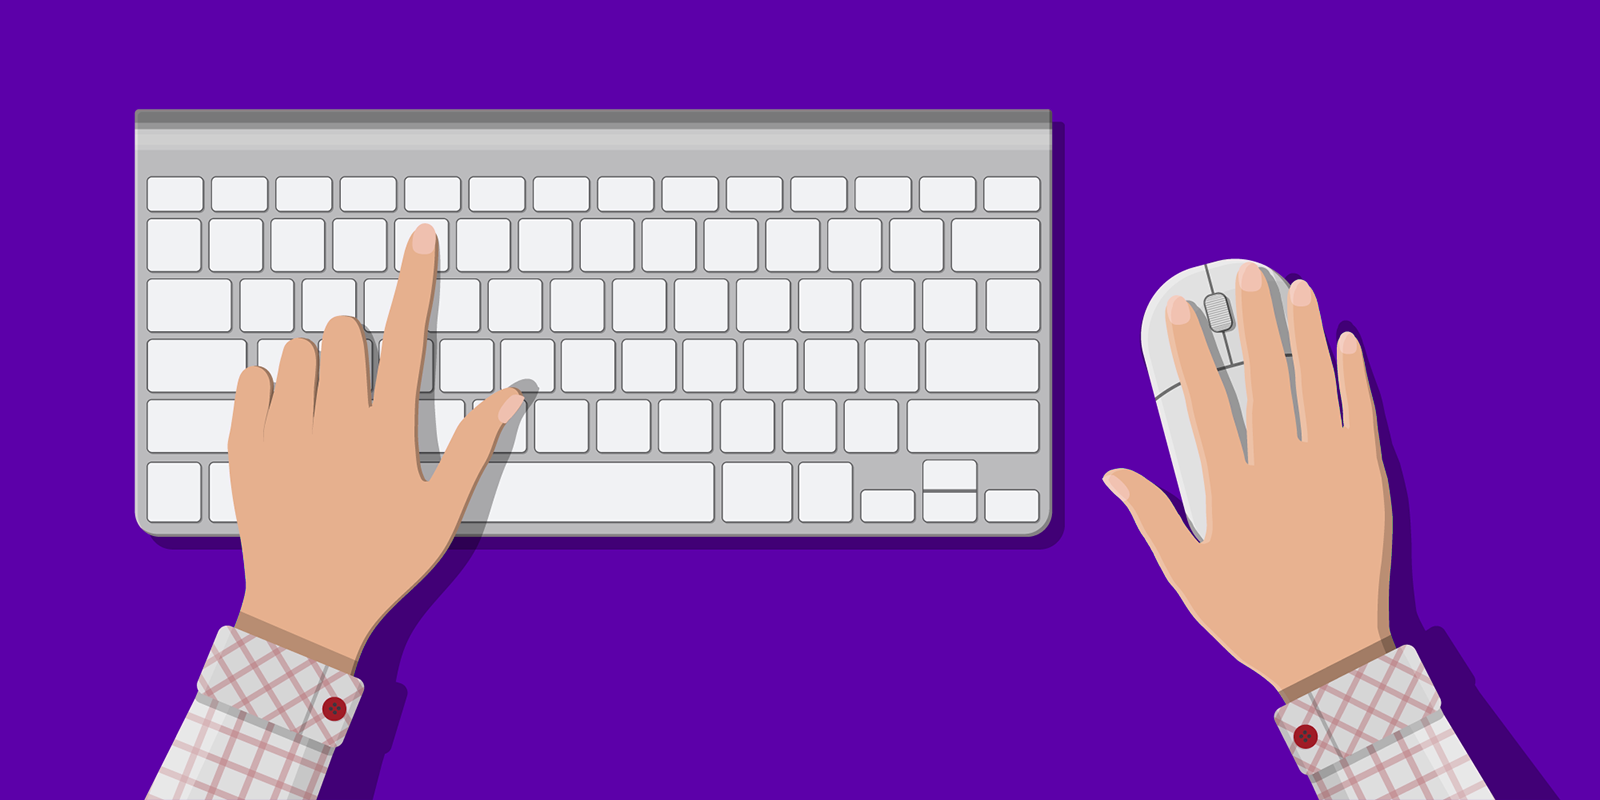 «Не работают клавиши цифр на клавиатуре ноутбука. Что делать?» — Яндекс Кью